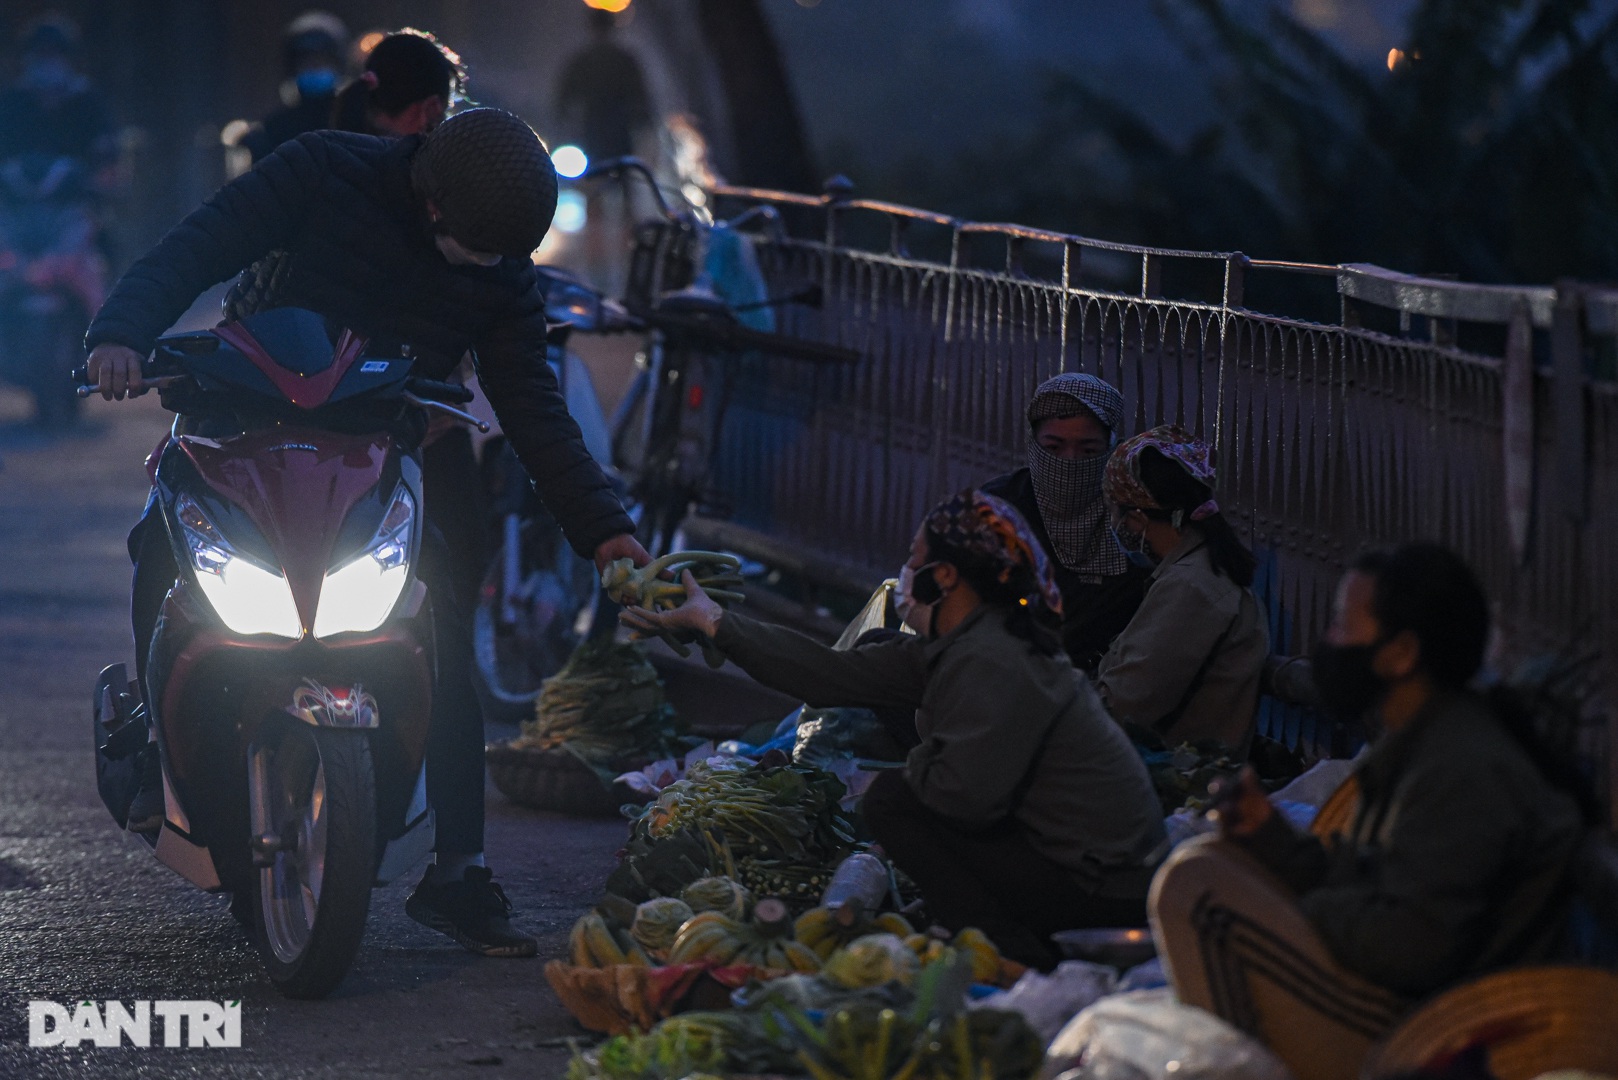 Cảnh họp chợ lộn xộn, giao thông ùn ứ trên cây cầu trăm tuổi ở Hà Nội - 10